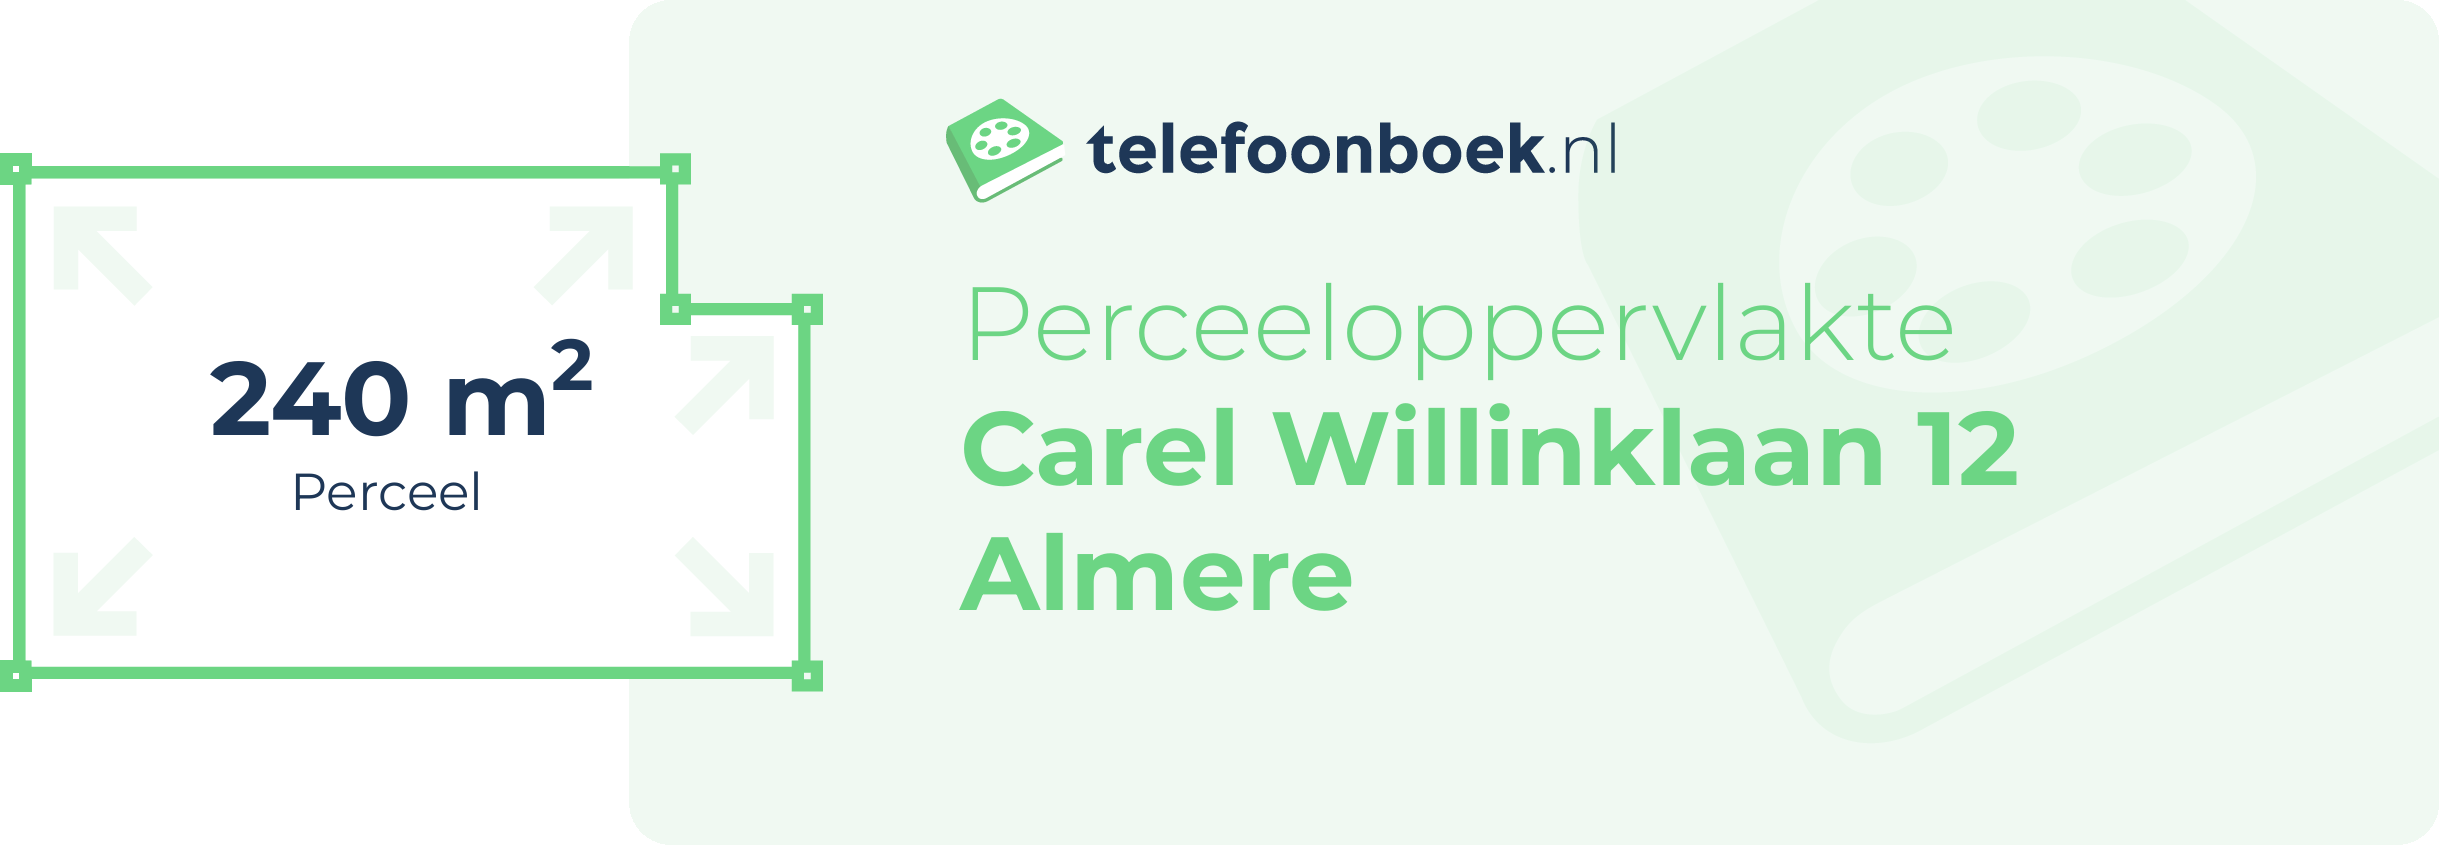 Perceeloppervlakte Carel Willinklaan 12 Almere